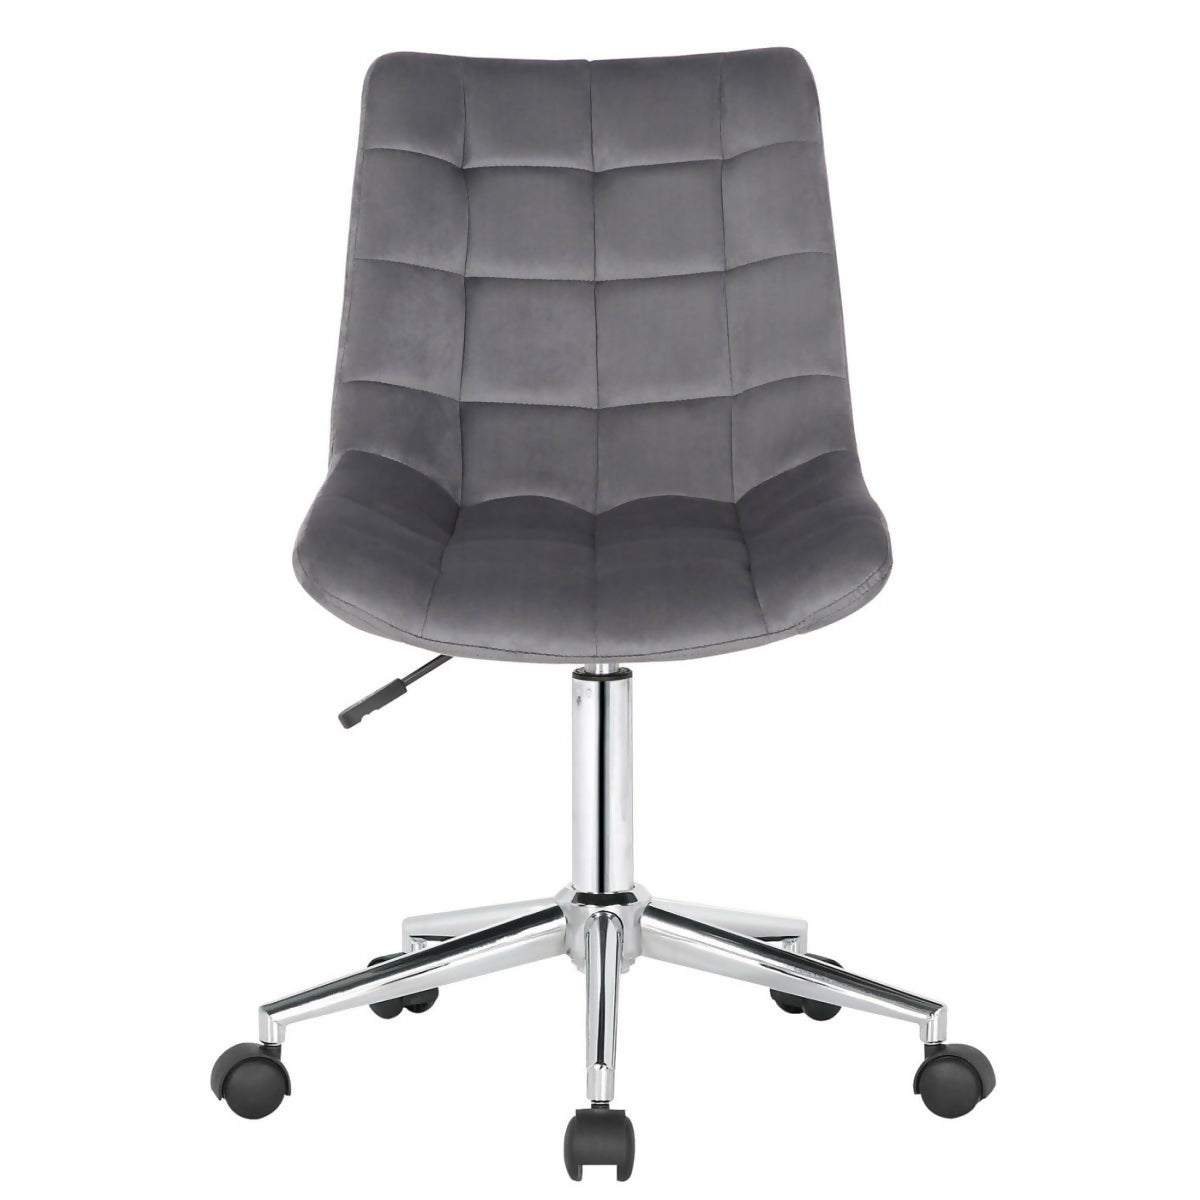 Medford office chair - Gray velvet